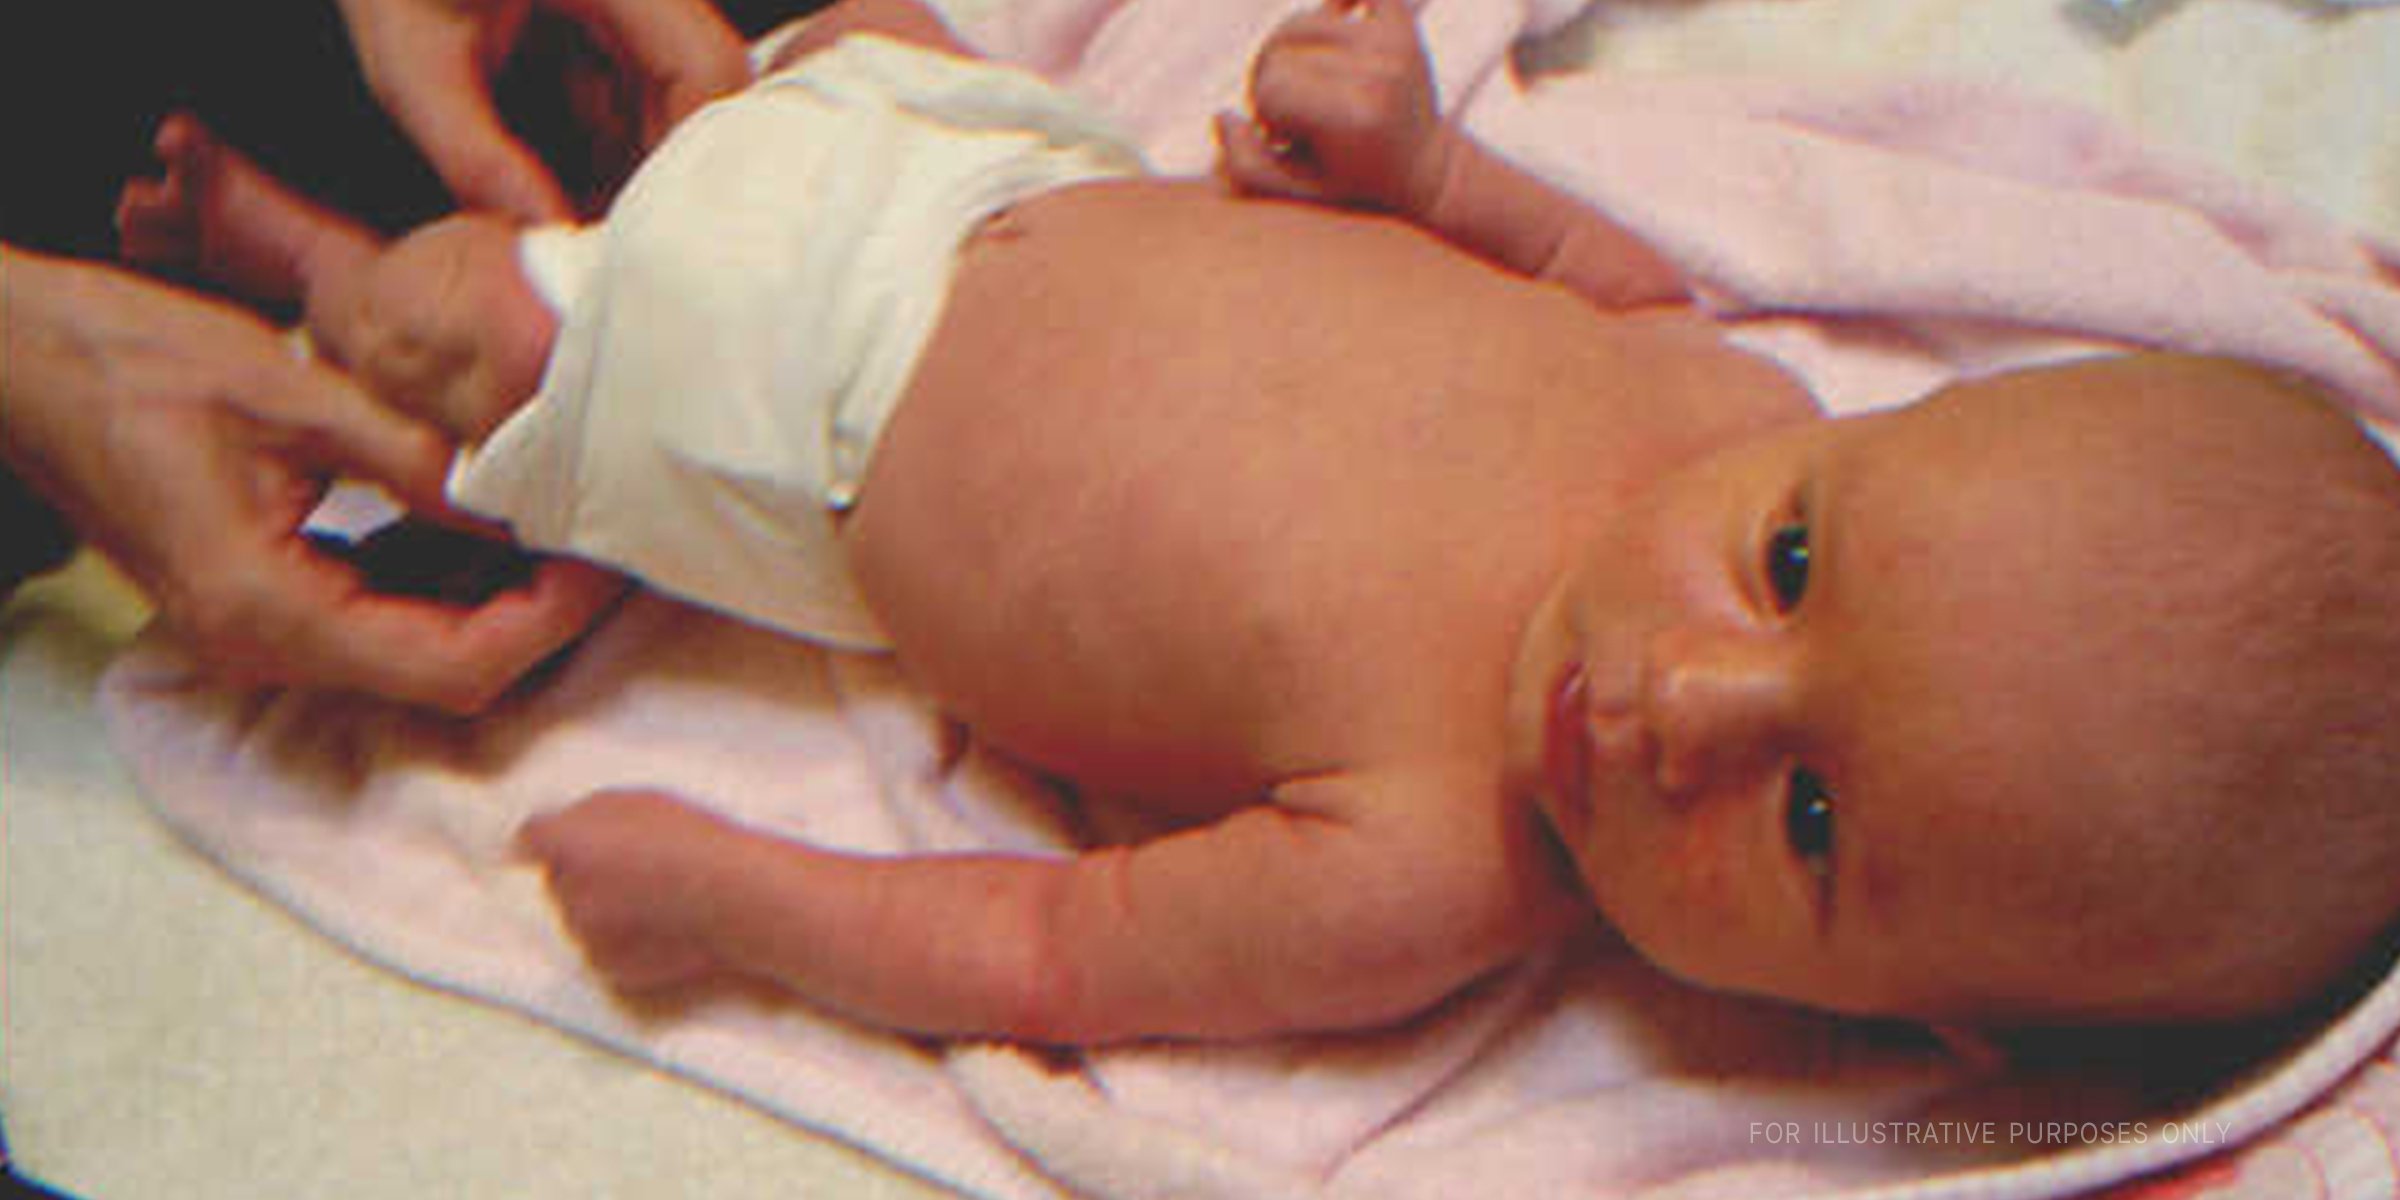 Bebé en pañales. | Foto: flickr.com/Sellers Patton (CC BY 2.0)